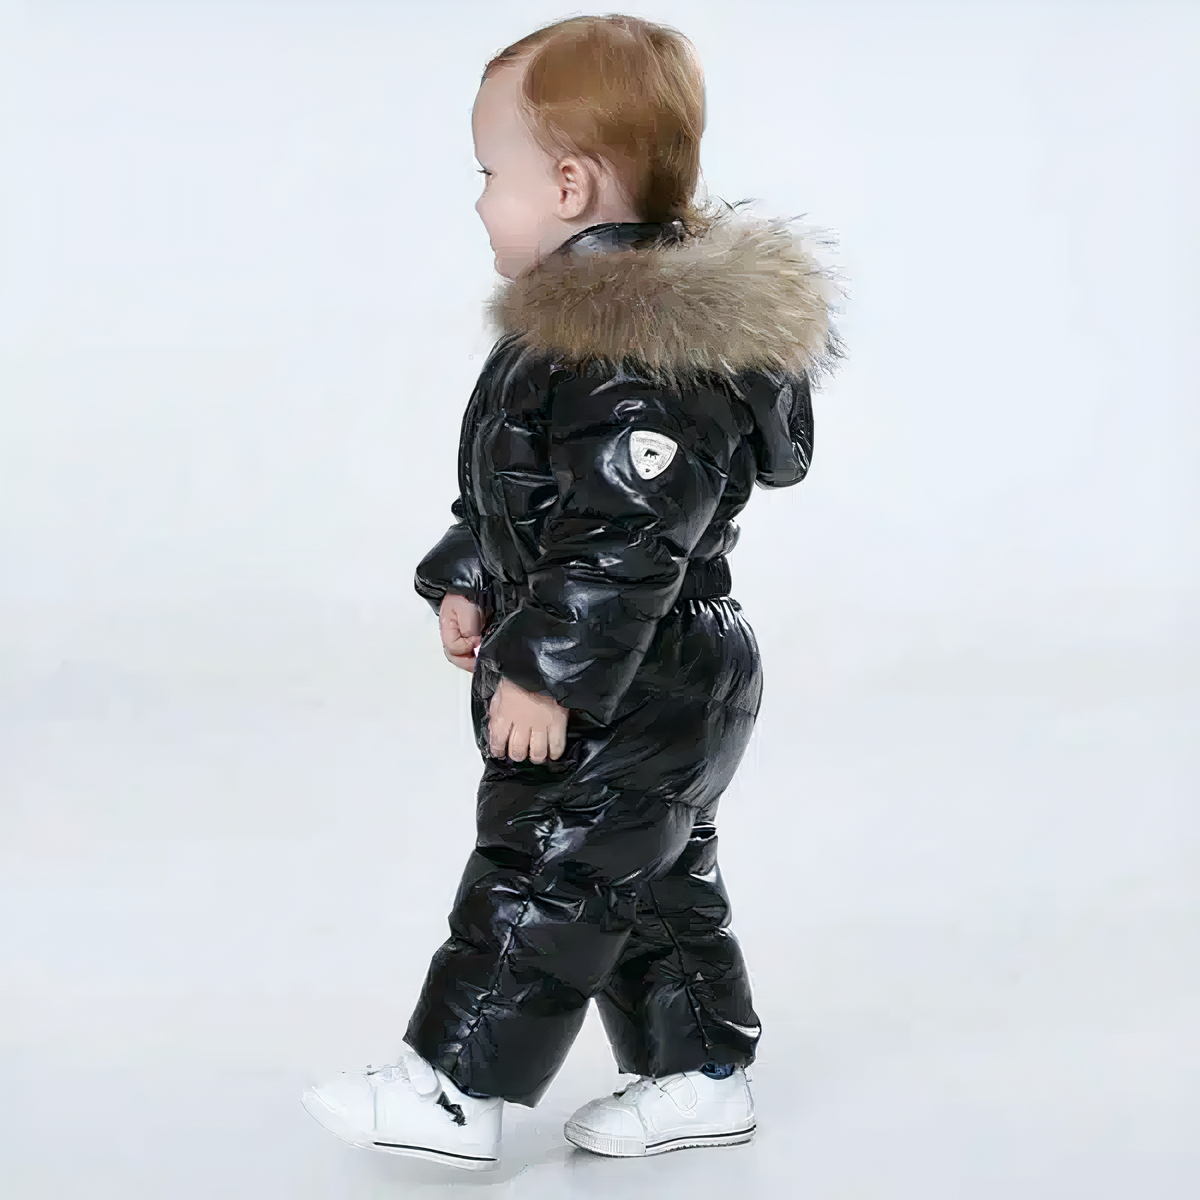 Doudoune combinaison noire pour bébé garçon porté par un petit garçon qui marche devant un fond bleu.